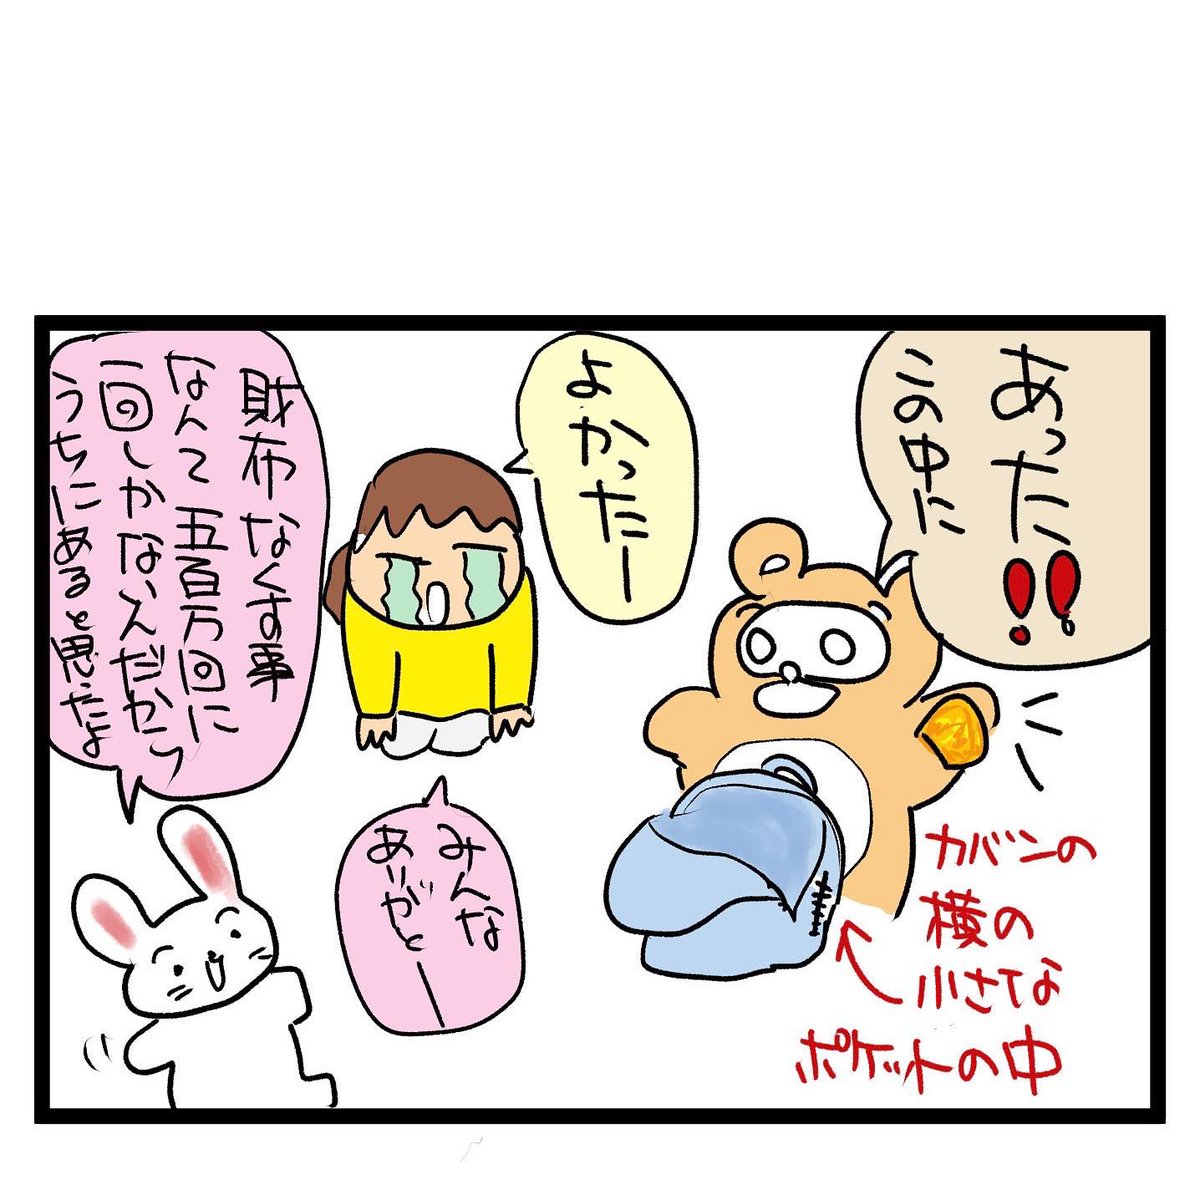 #四コマ漫画
財布無くした!? 